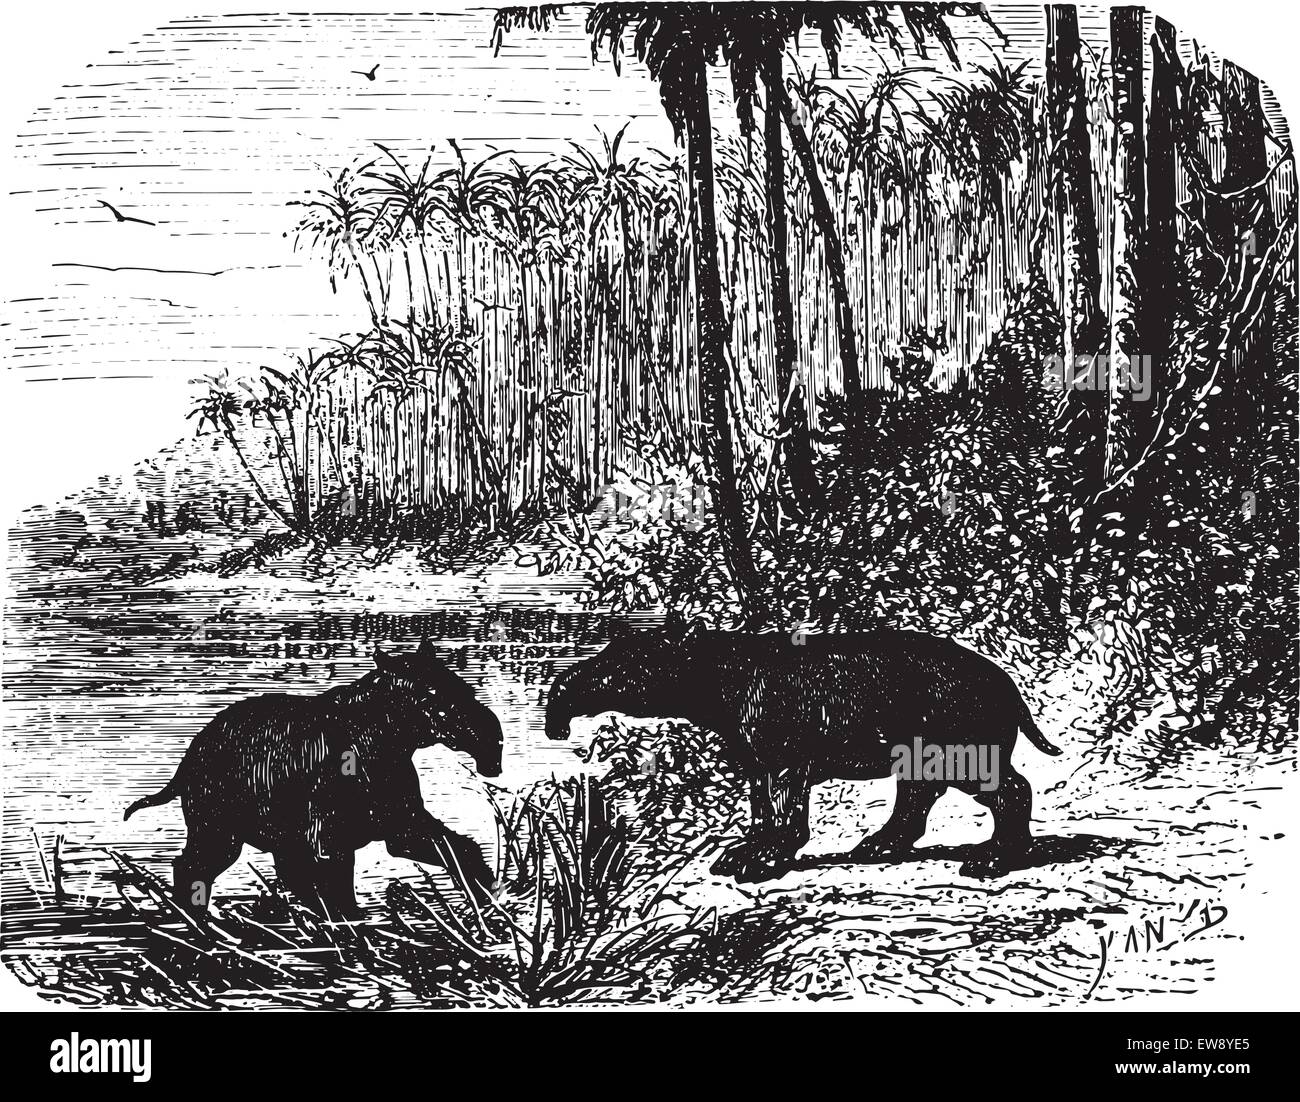 Zwei riesige Ameisenbären im Wald, graviert Vintage Illustration. Animaux Sauvages et Domestiques - für Kinder - 1892. Stock Vektor